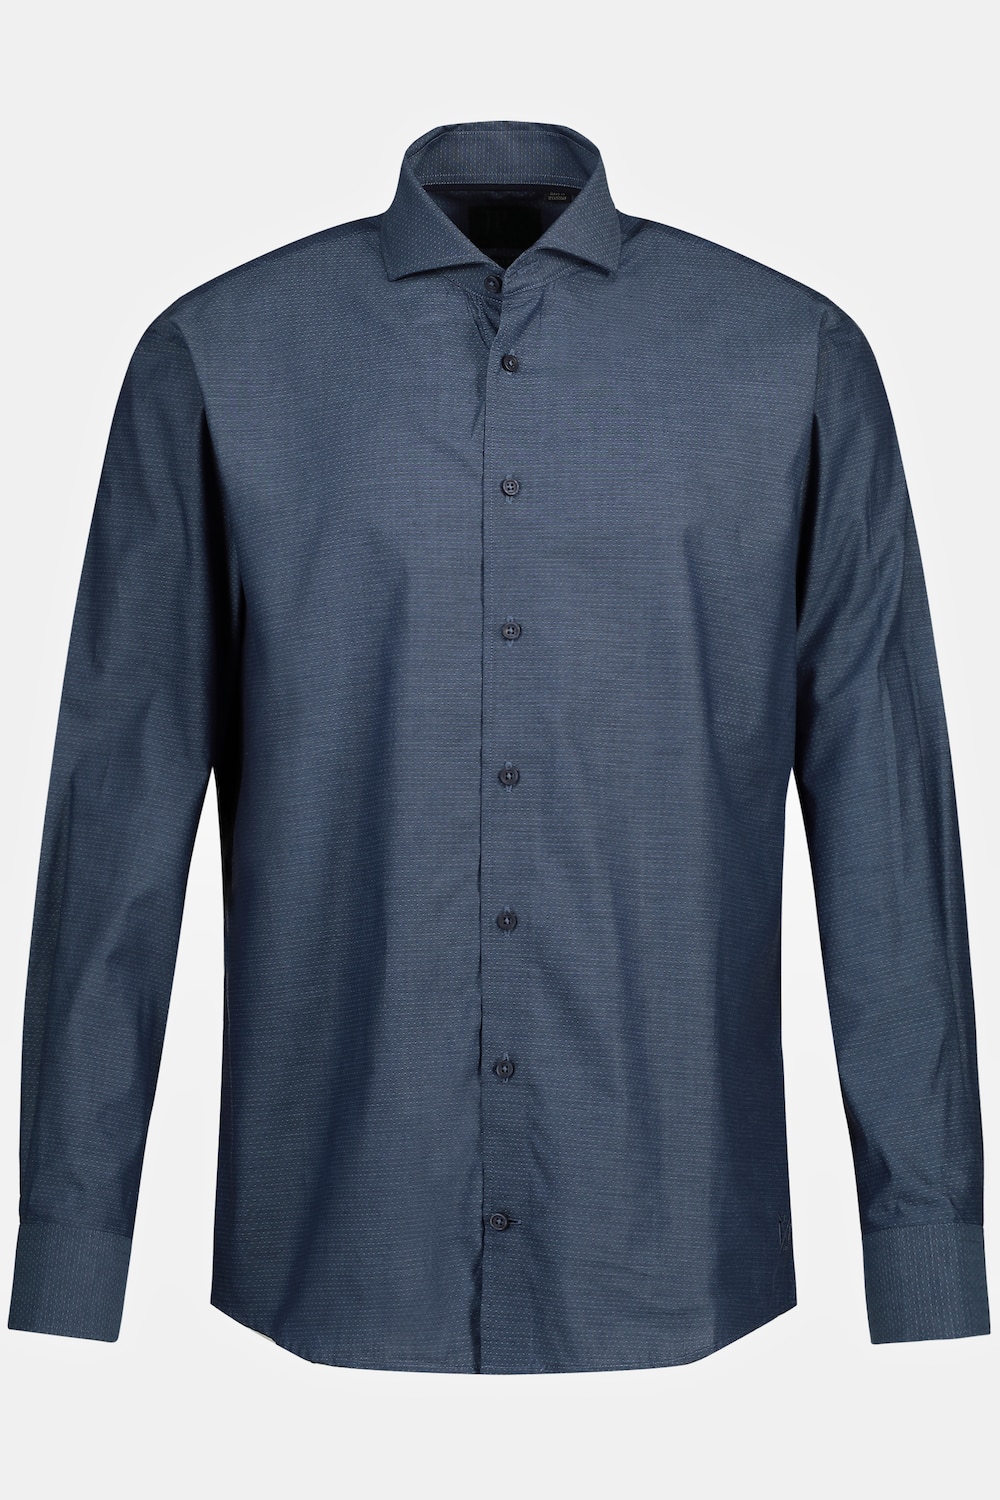 Grote Maten Zakelijk overhemd, Heren, blauw, Maat: XL, Katoen, JP1880